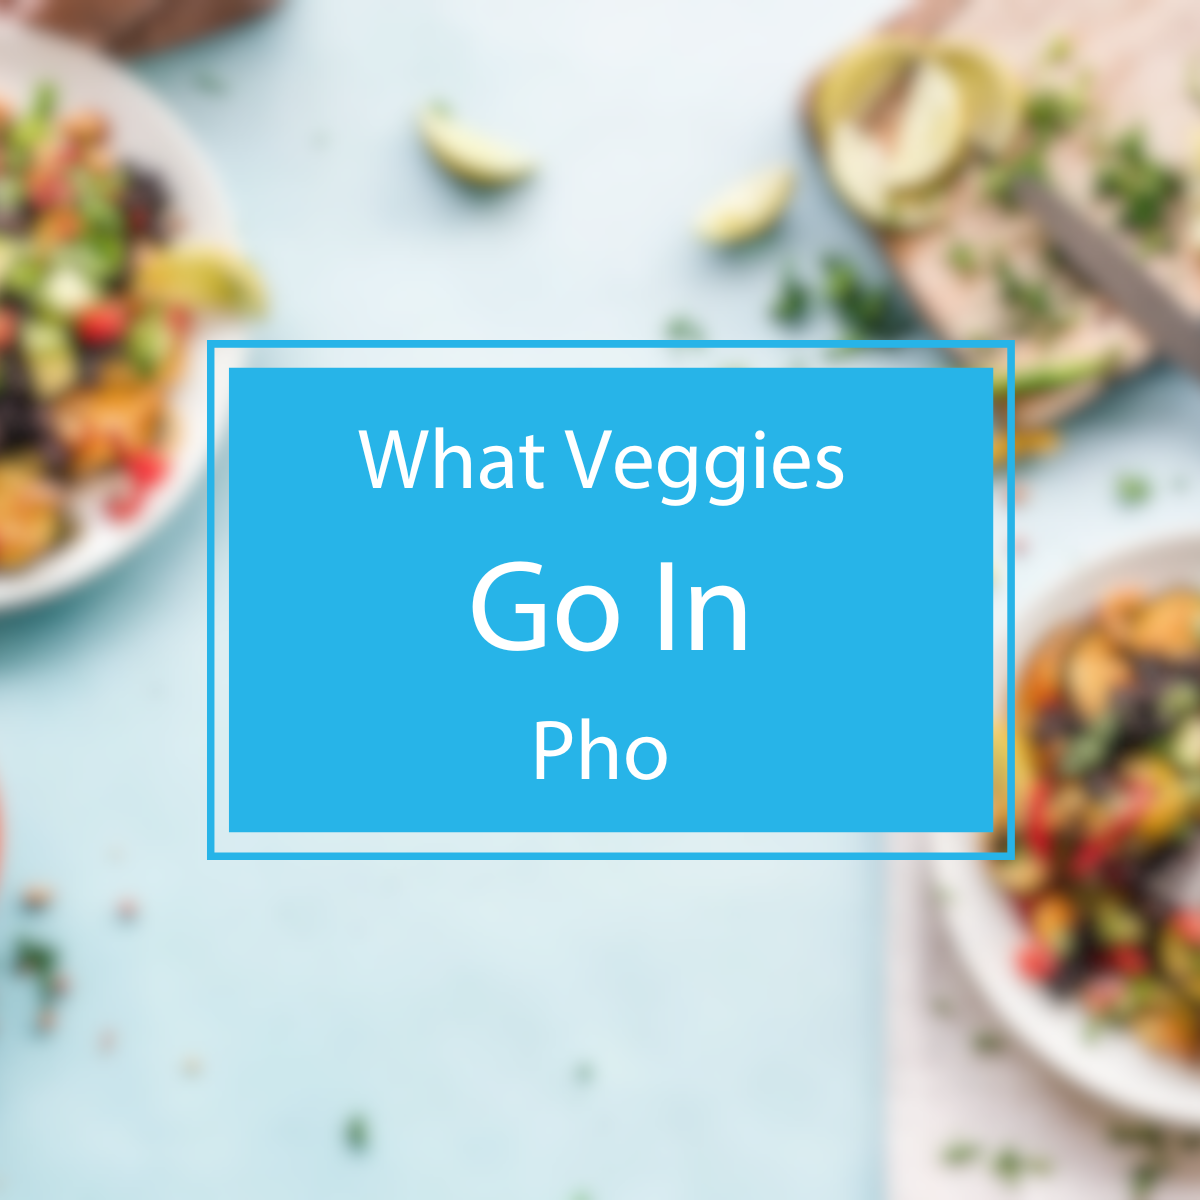 What Veggies Go In Pho